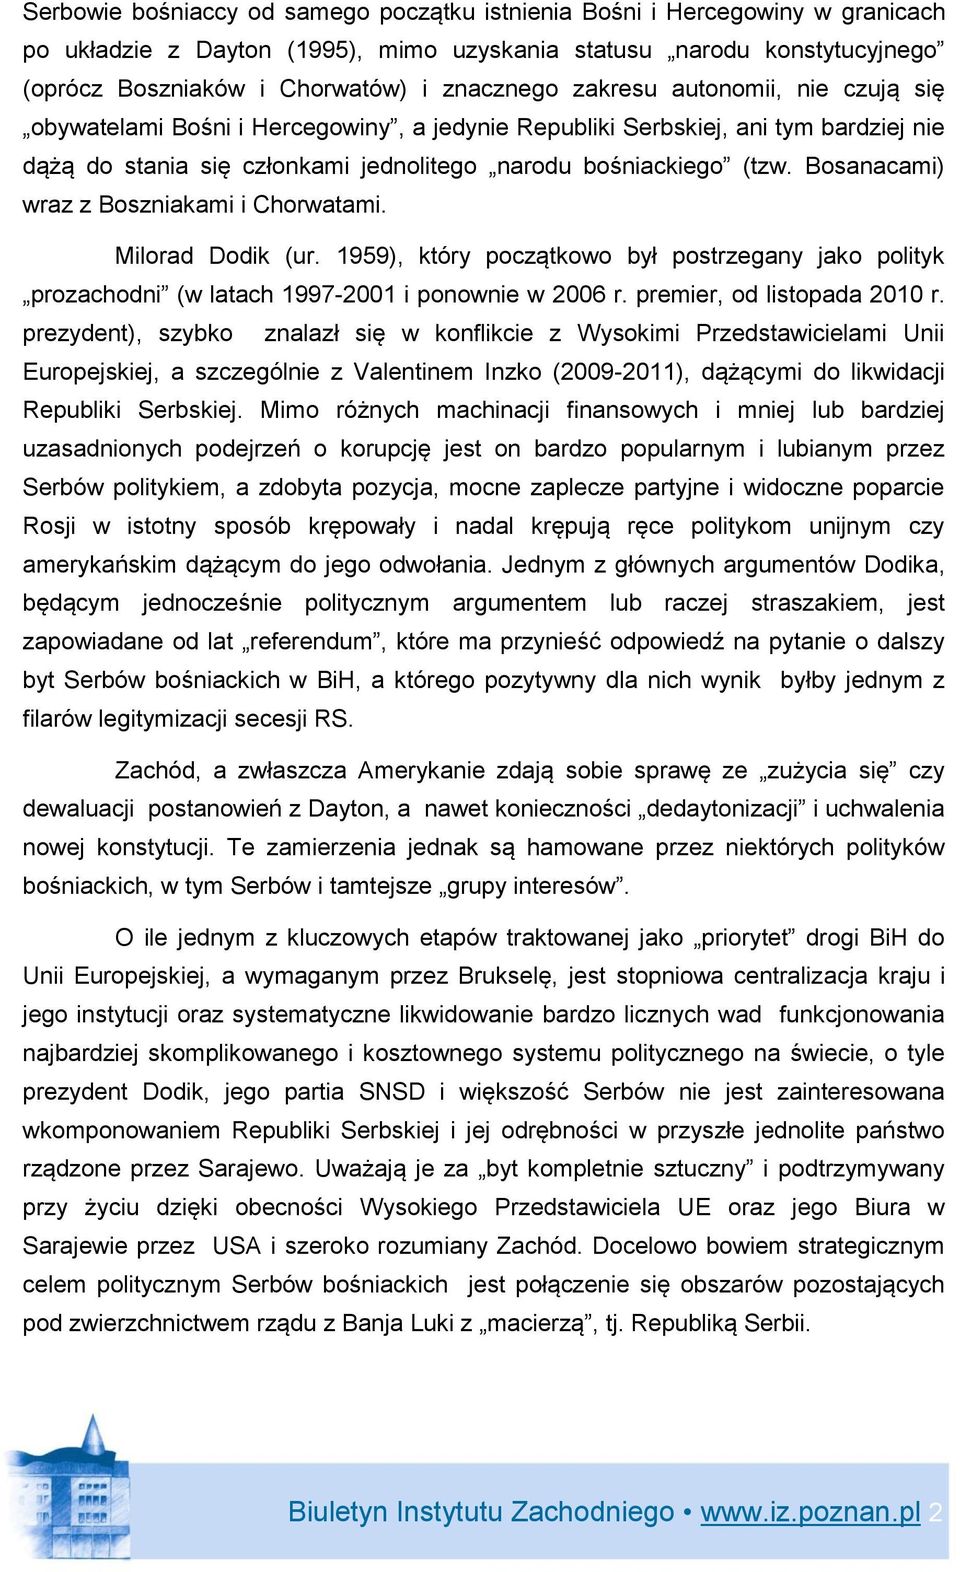 Bosanacami) wraz z Boszniakami i Chorwatami. Milorad Dodik (ur. 1959), który początkowo był postrzegany jako polityk prozachodni (w latach 1997-2001 i ponownie w 2006 r. premier, od listopada 2010 r.